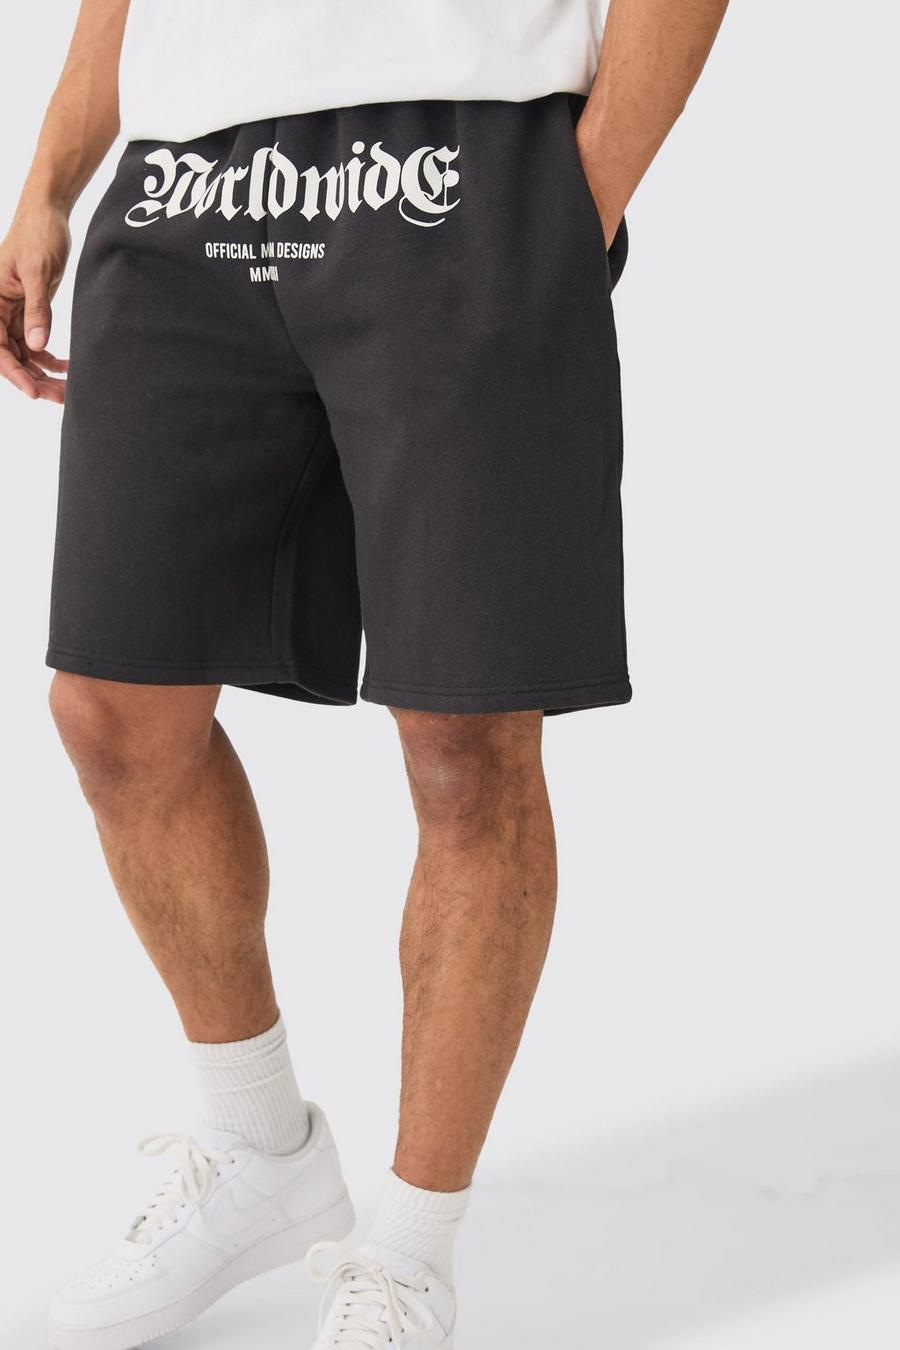 Pantalón corto oversize con estampado Worldwide en la entrepierna, Black image number 1